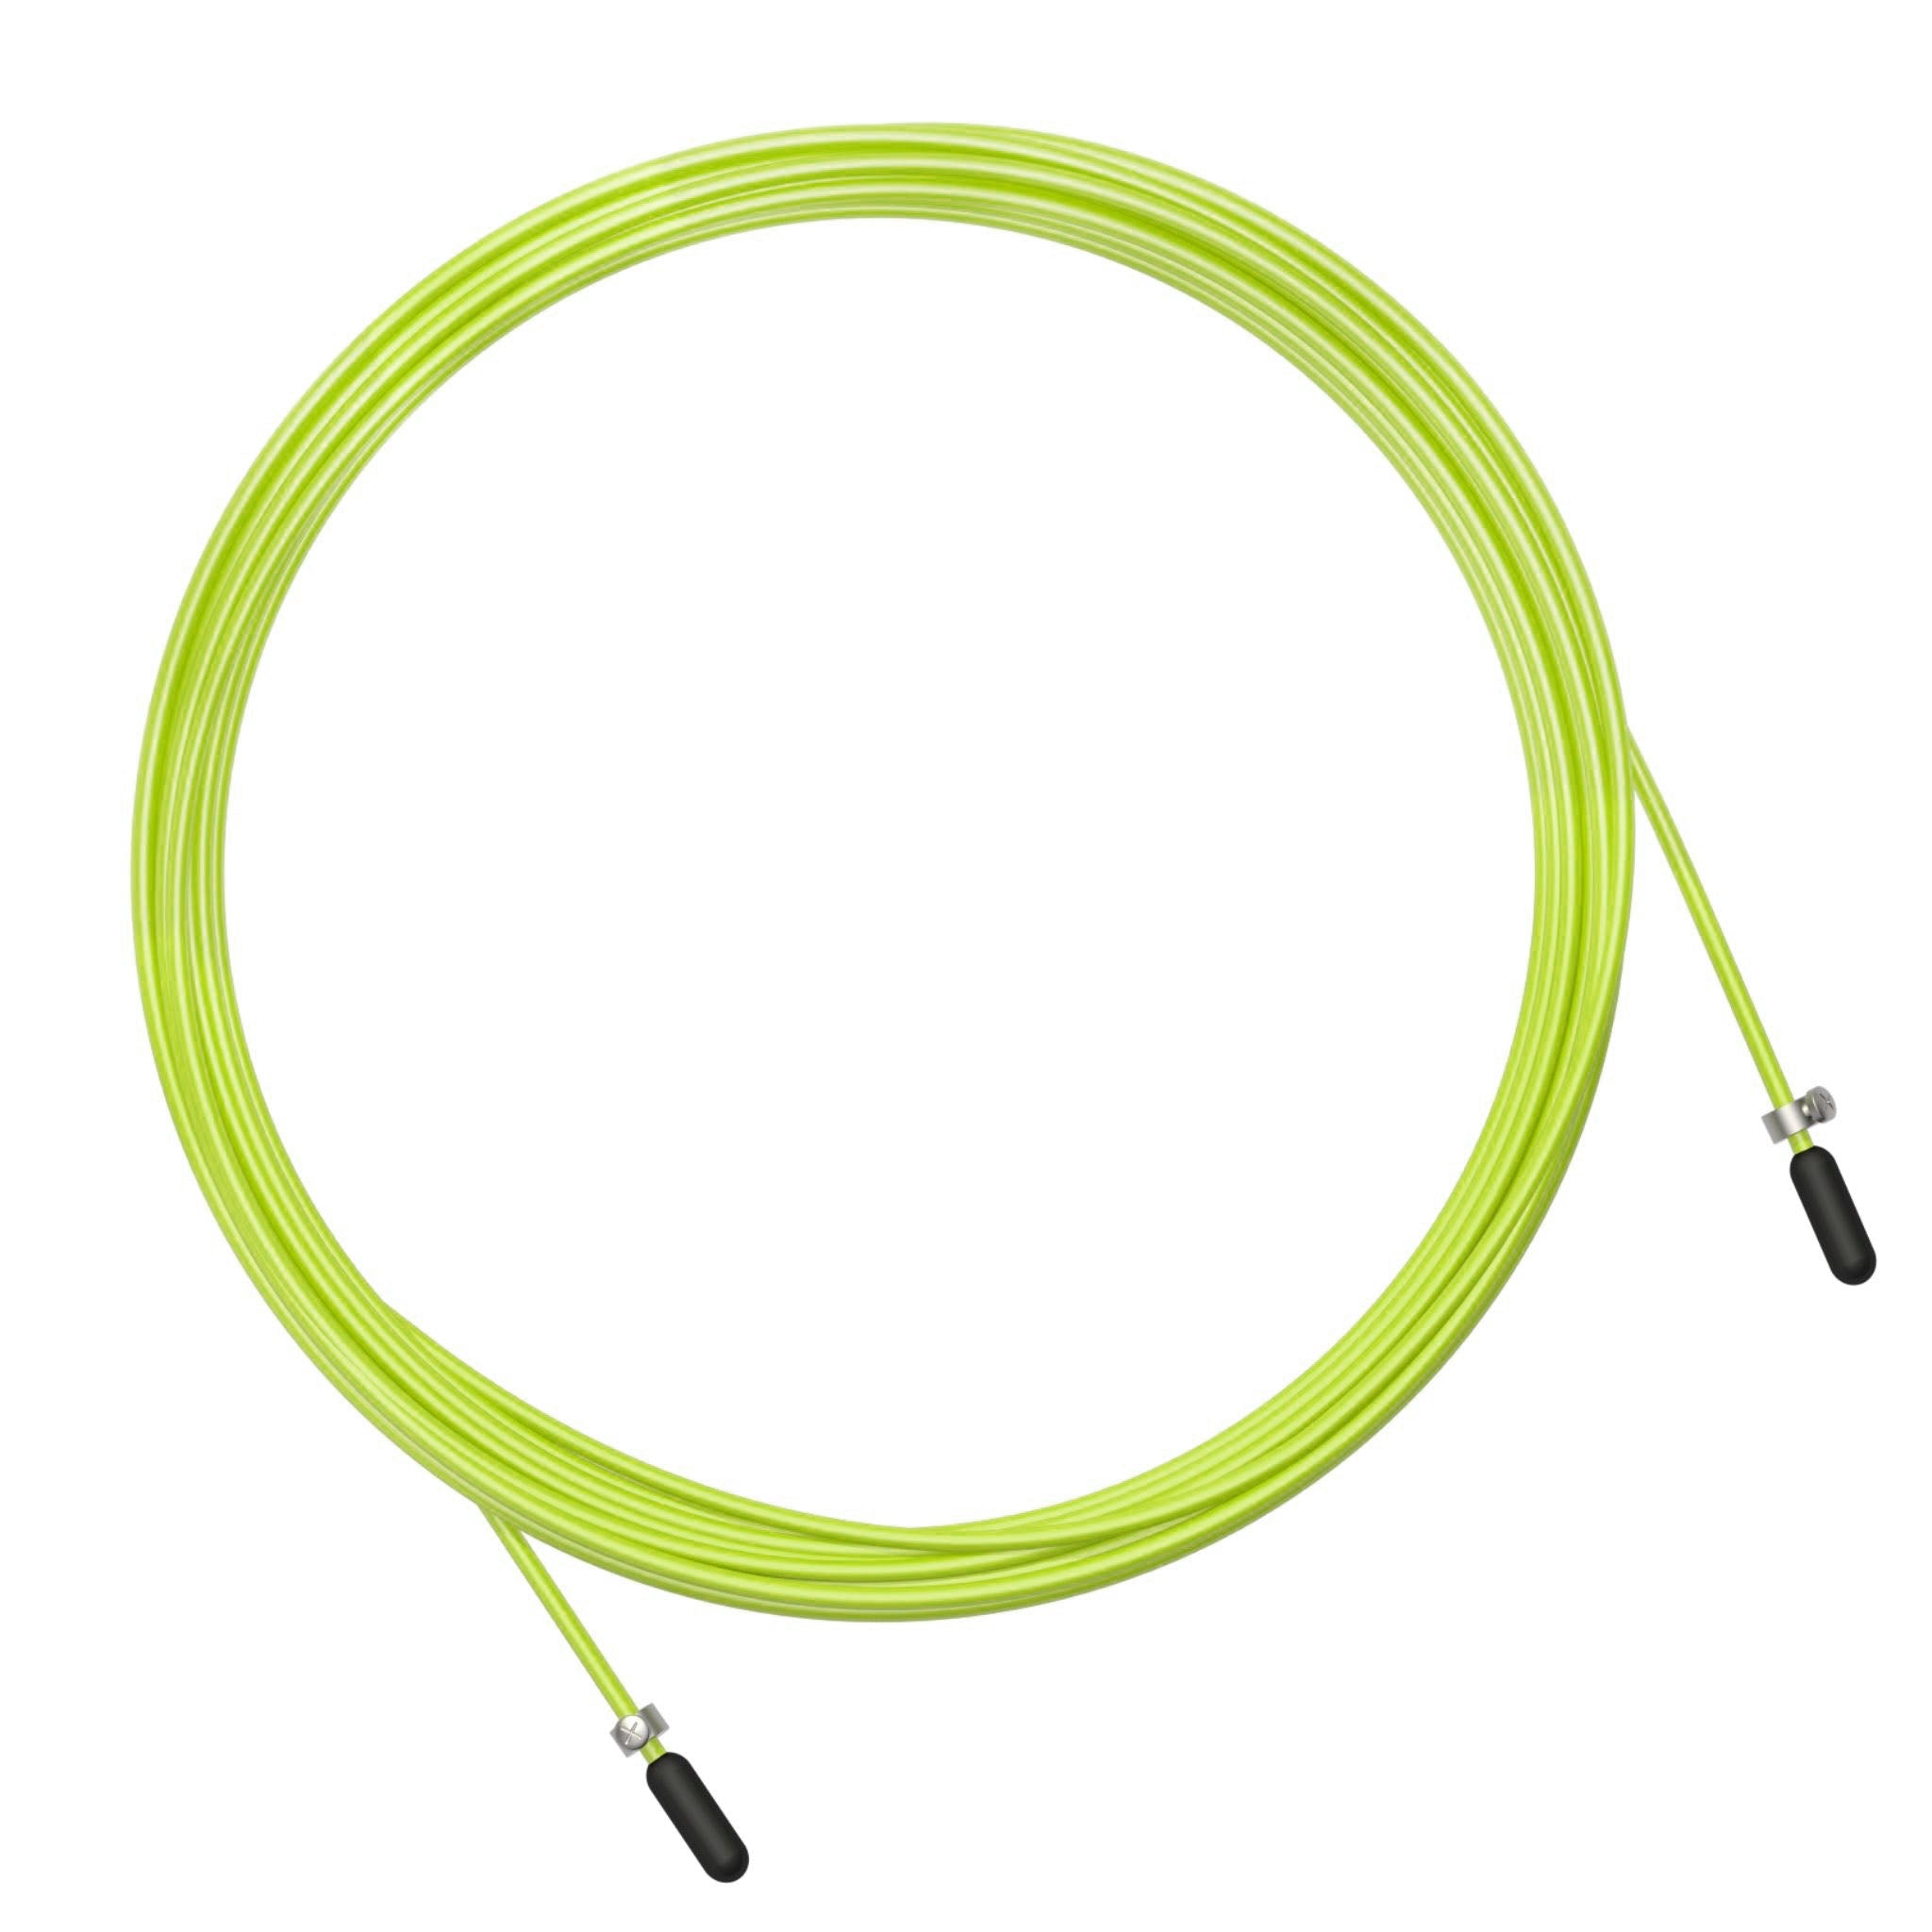 Velites Pack Comba Fire 2.0 + Cables de Velocidad - En un solo pack llévate  los 3 cables disponibles - Para tu entrenamiento funcional, cardio, fuerza  y saltos dobles - Comba Color